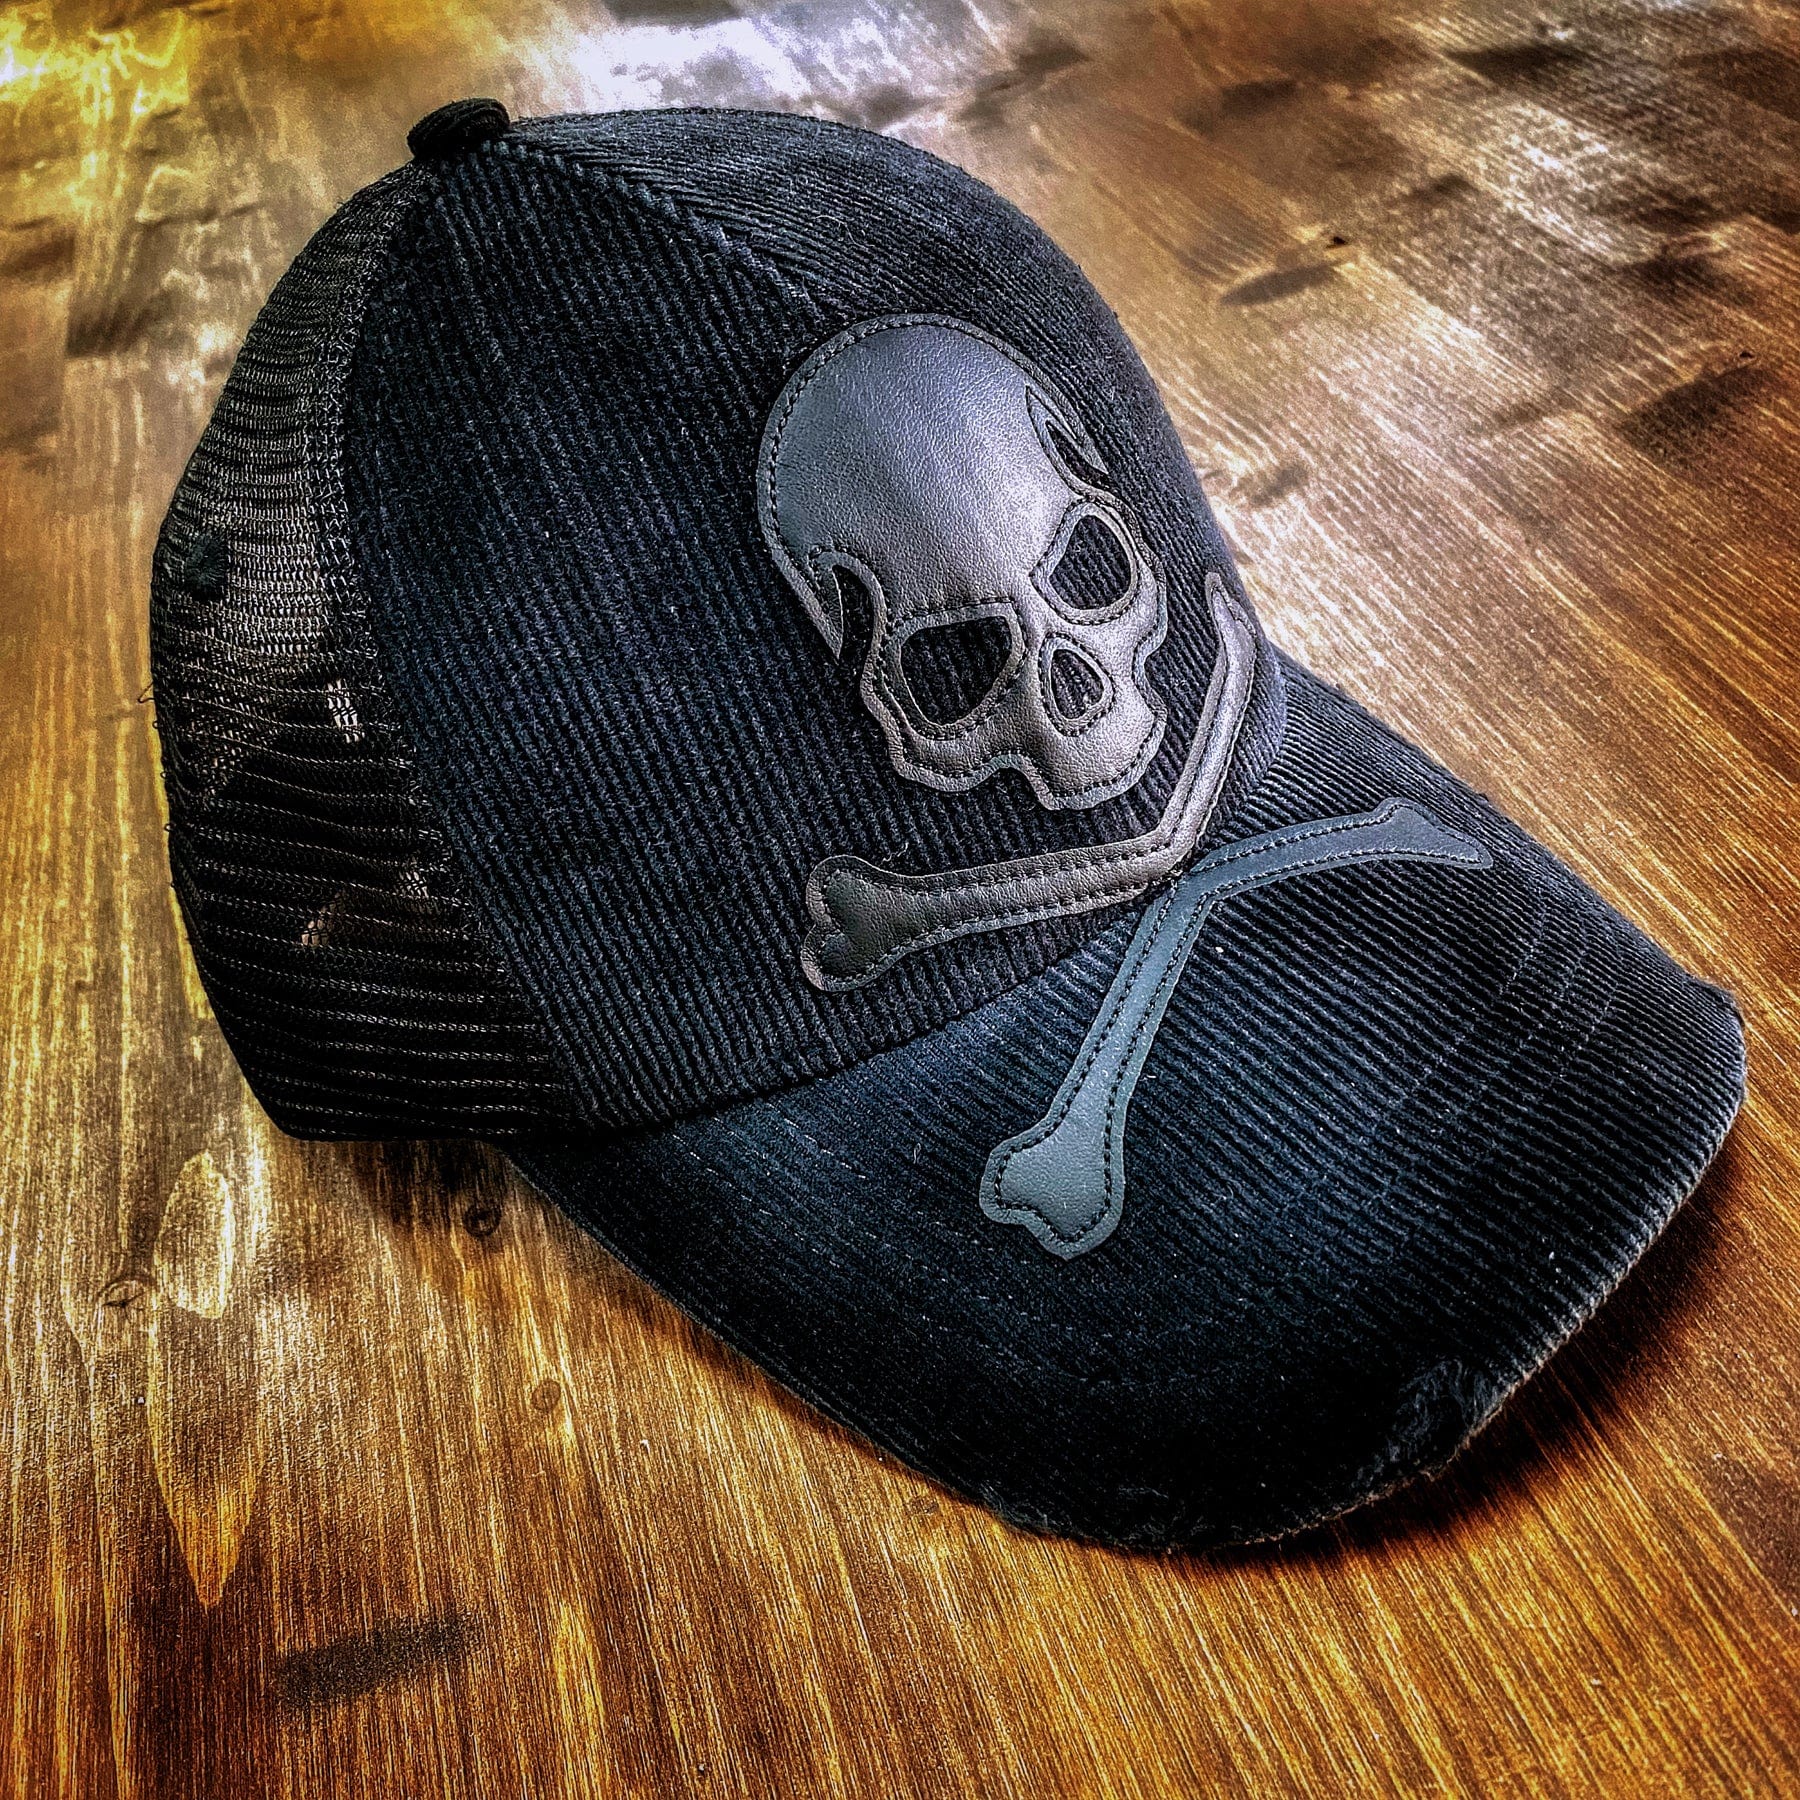 Wornstar Clothing Hat Relentless Black Trucker Hat